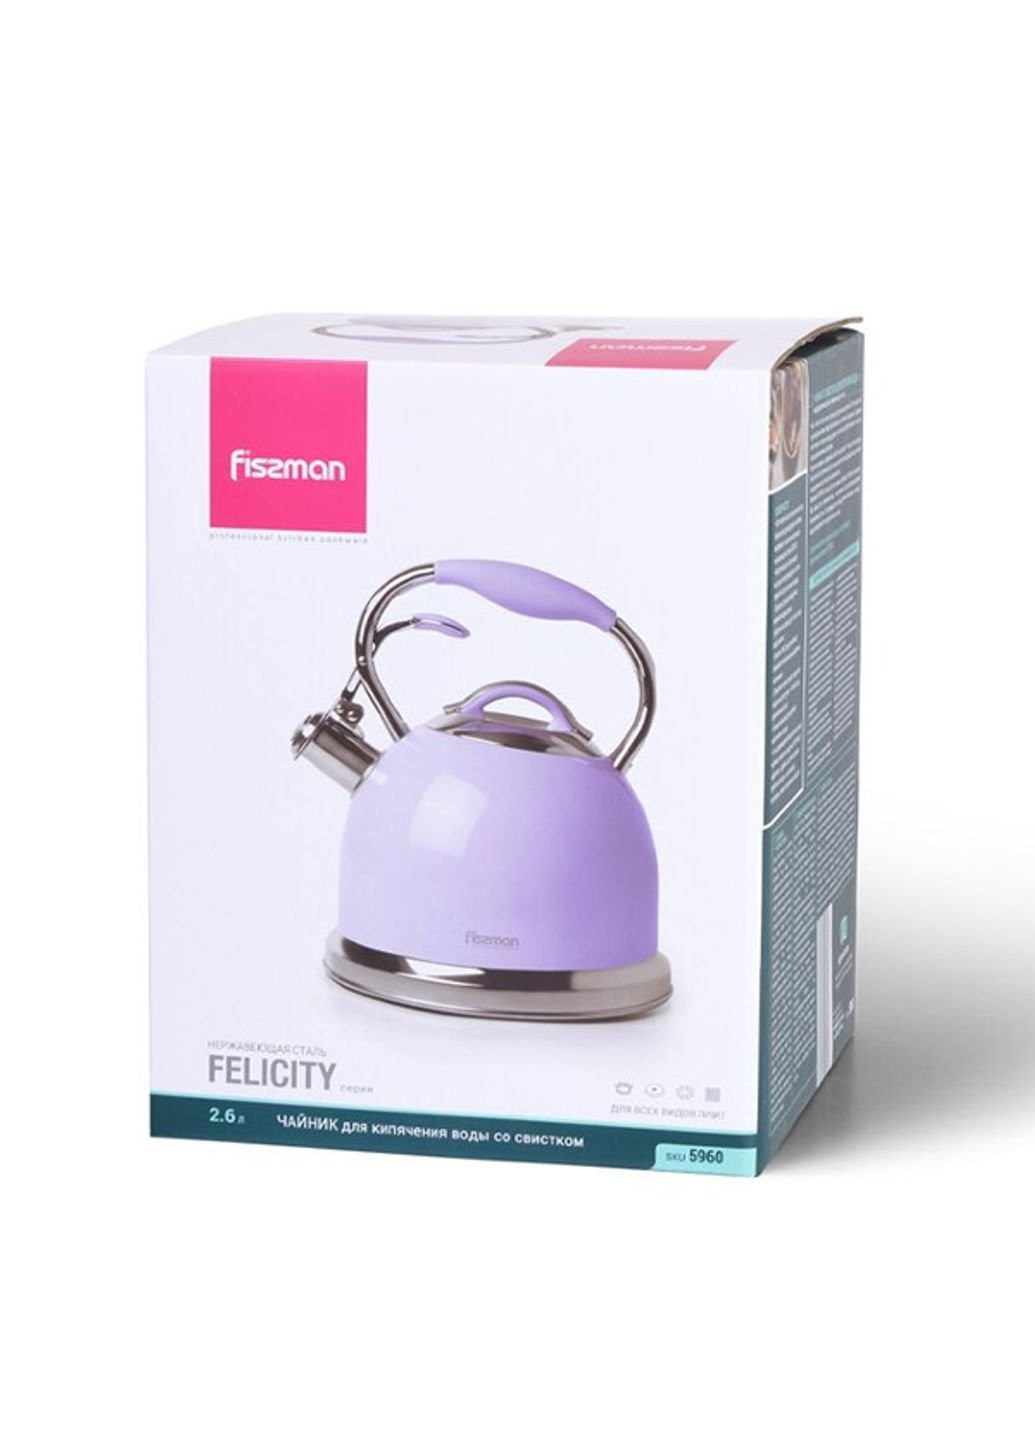 Чайник со свистком Felicity FS-5960 2,6 л фиолетовый Fissman (253629215)